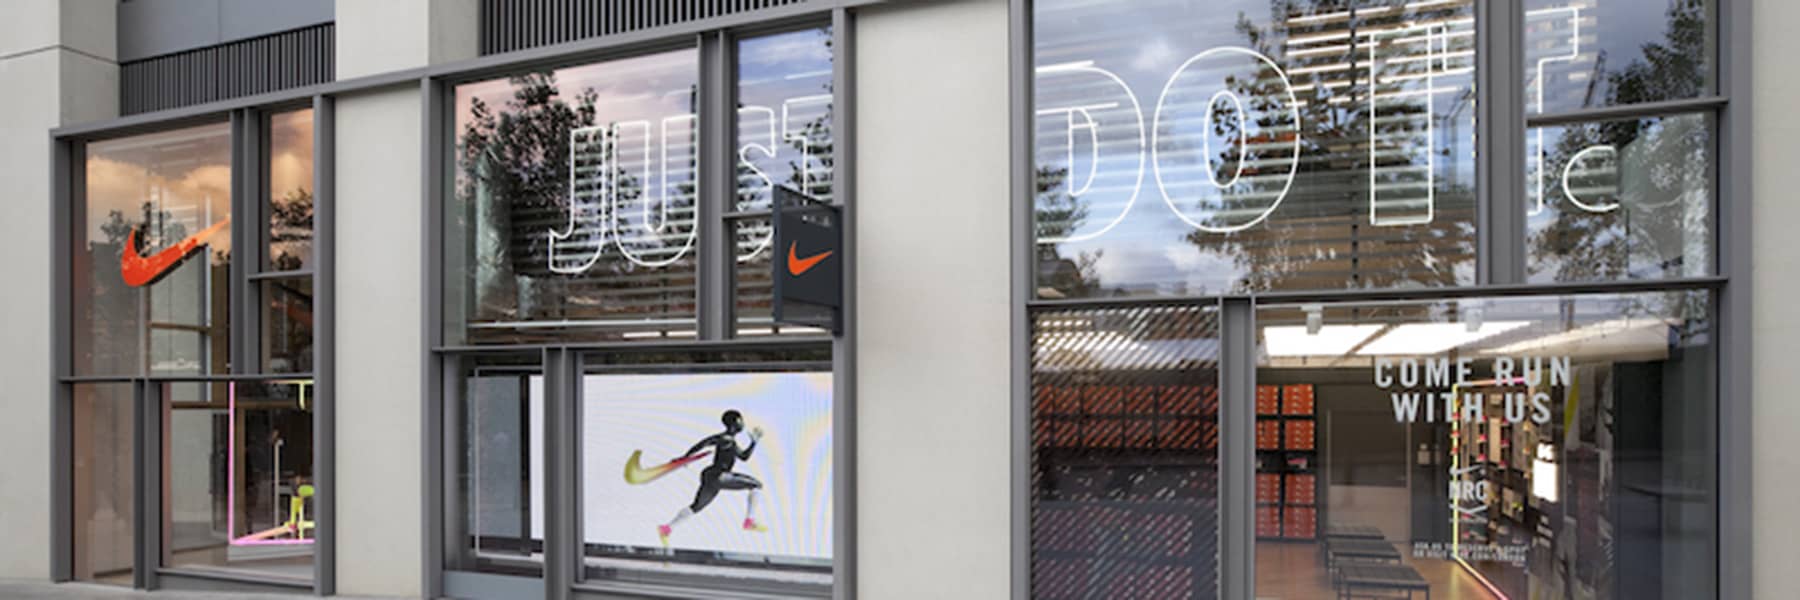 Overdreven Wederzijds JEP Nike Clearance Store Salerno. Eboli, ITA. Nike.com